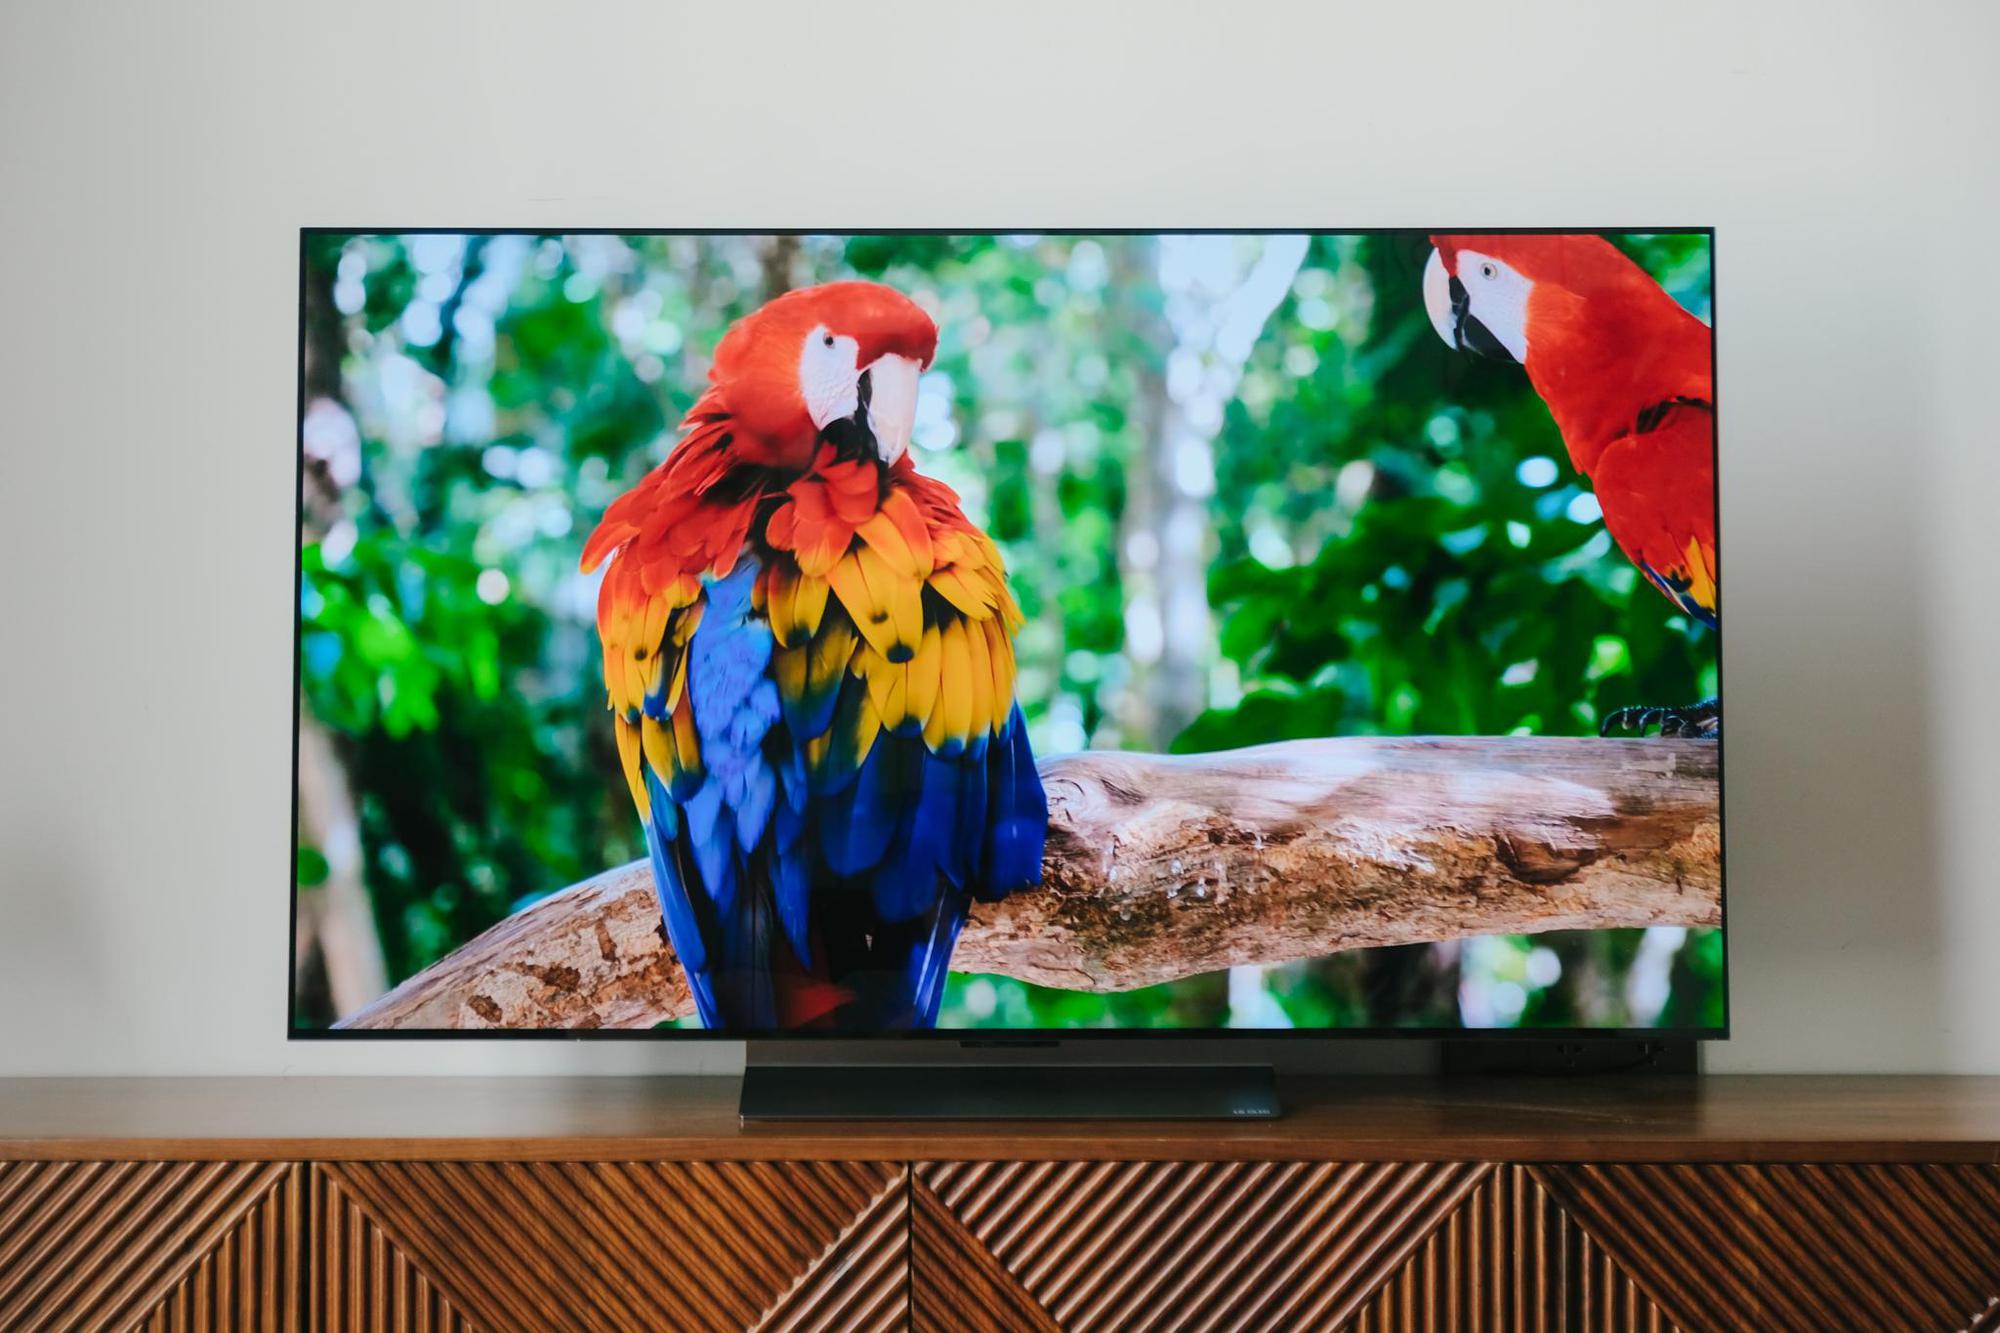 LG OLED TV và “độc chiêu” điều chỉnh chiếc TV cá nhân hoá không phải ai cũng biết! - Ảnh 1.